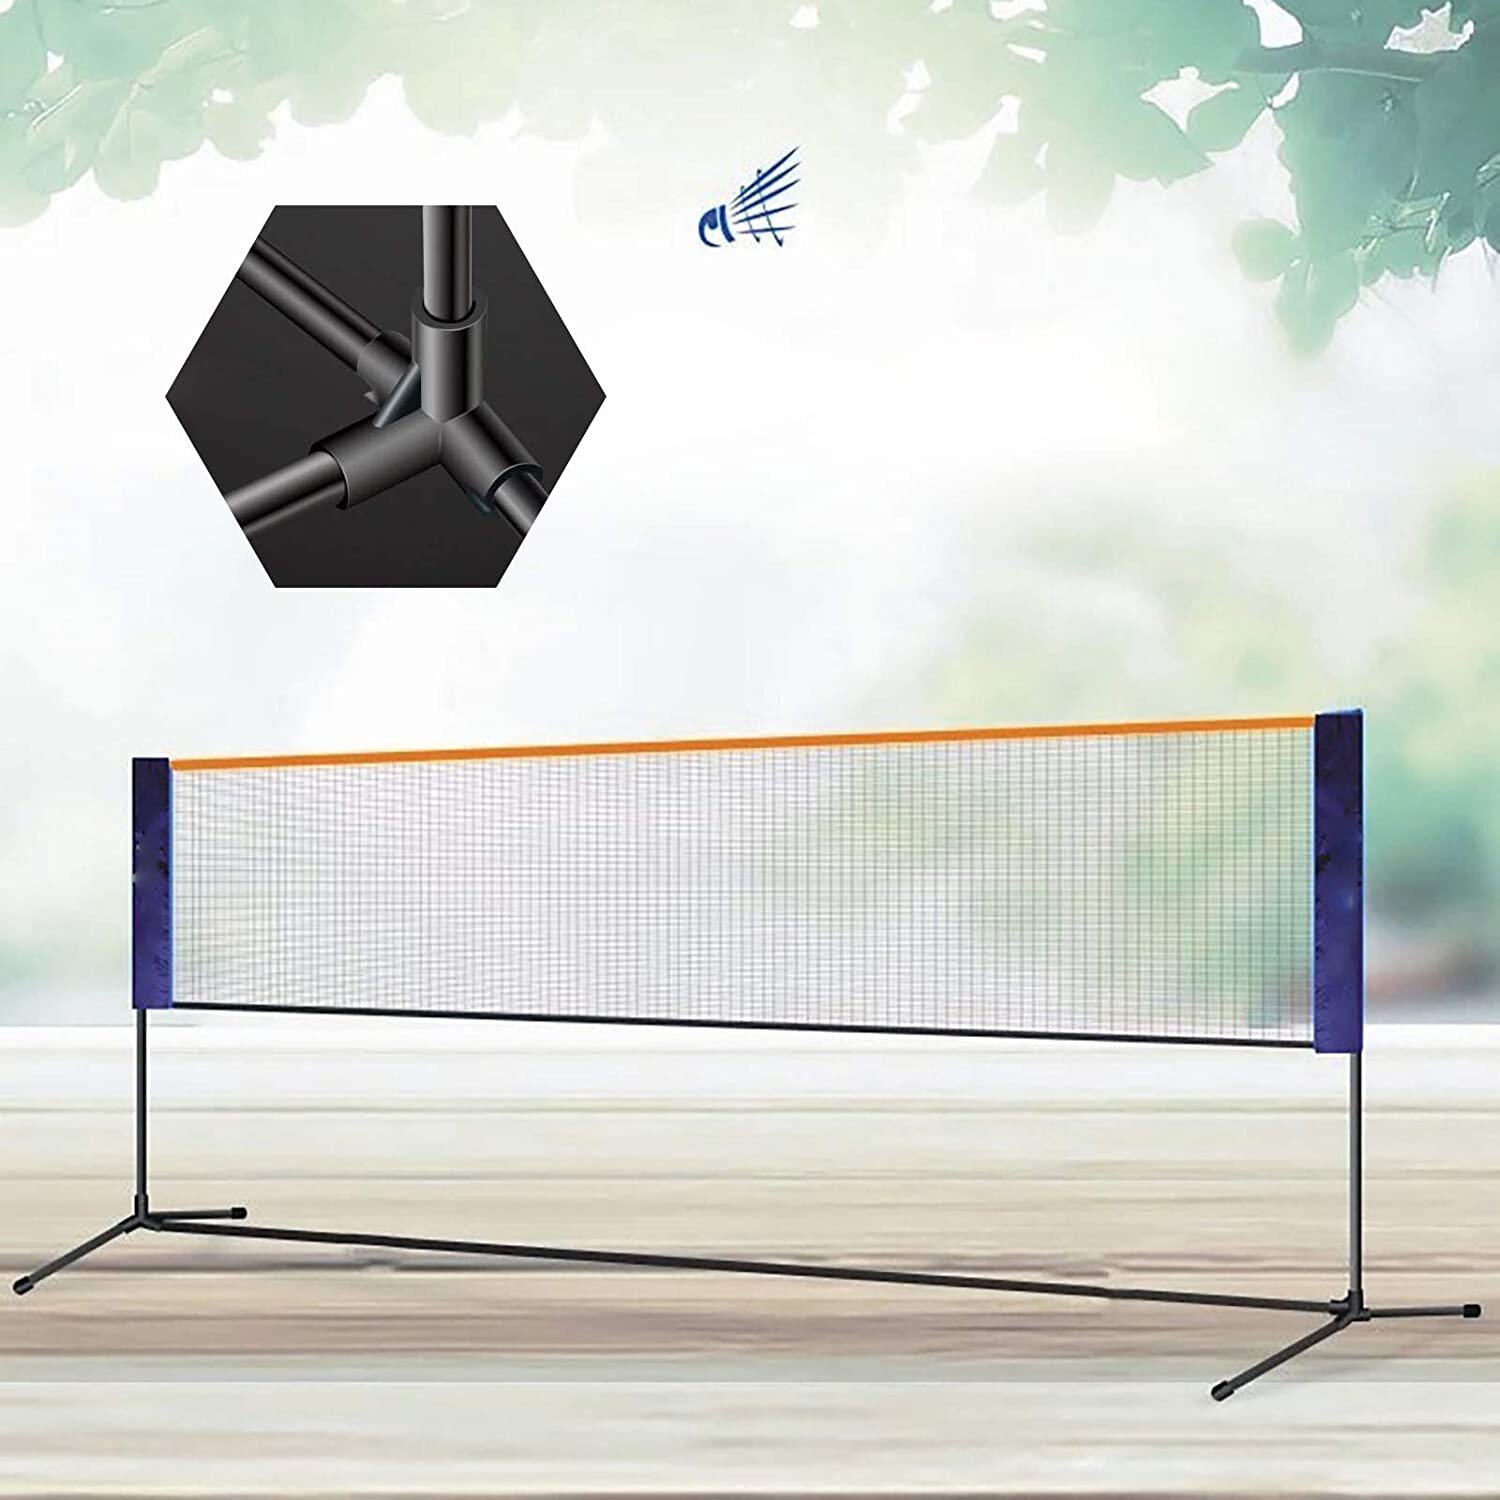 Volleyball Tennis Badminton Net Set Adjustable in Height Outdoor Beach Games US 